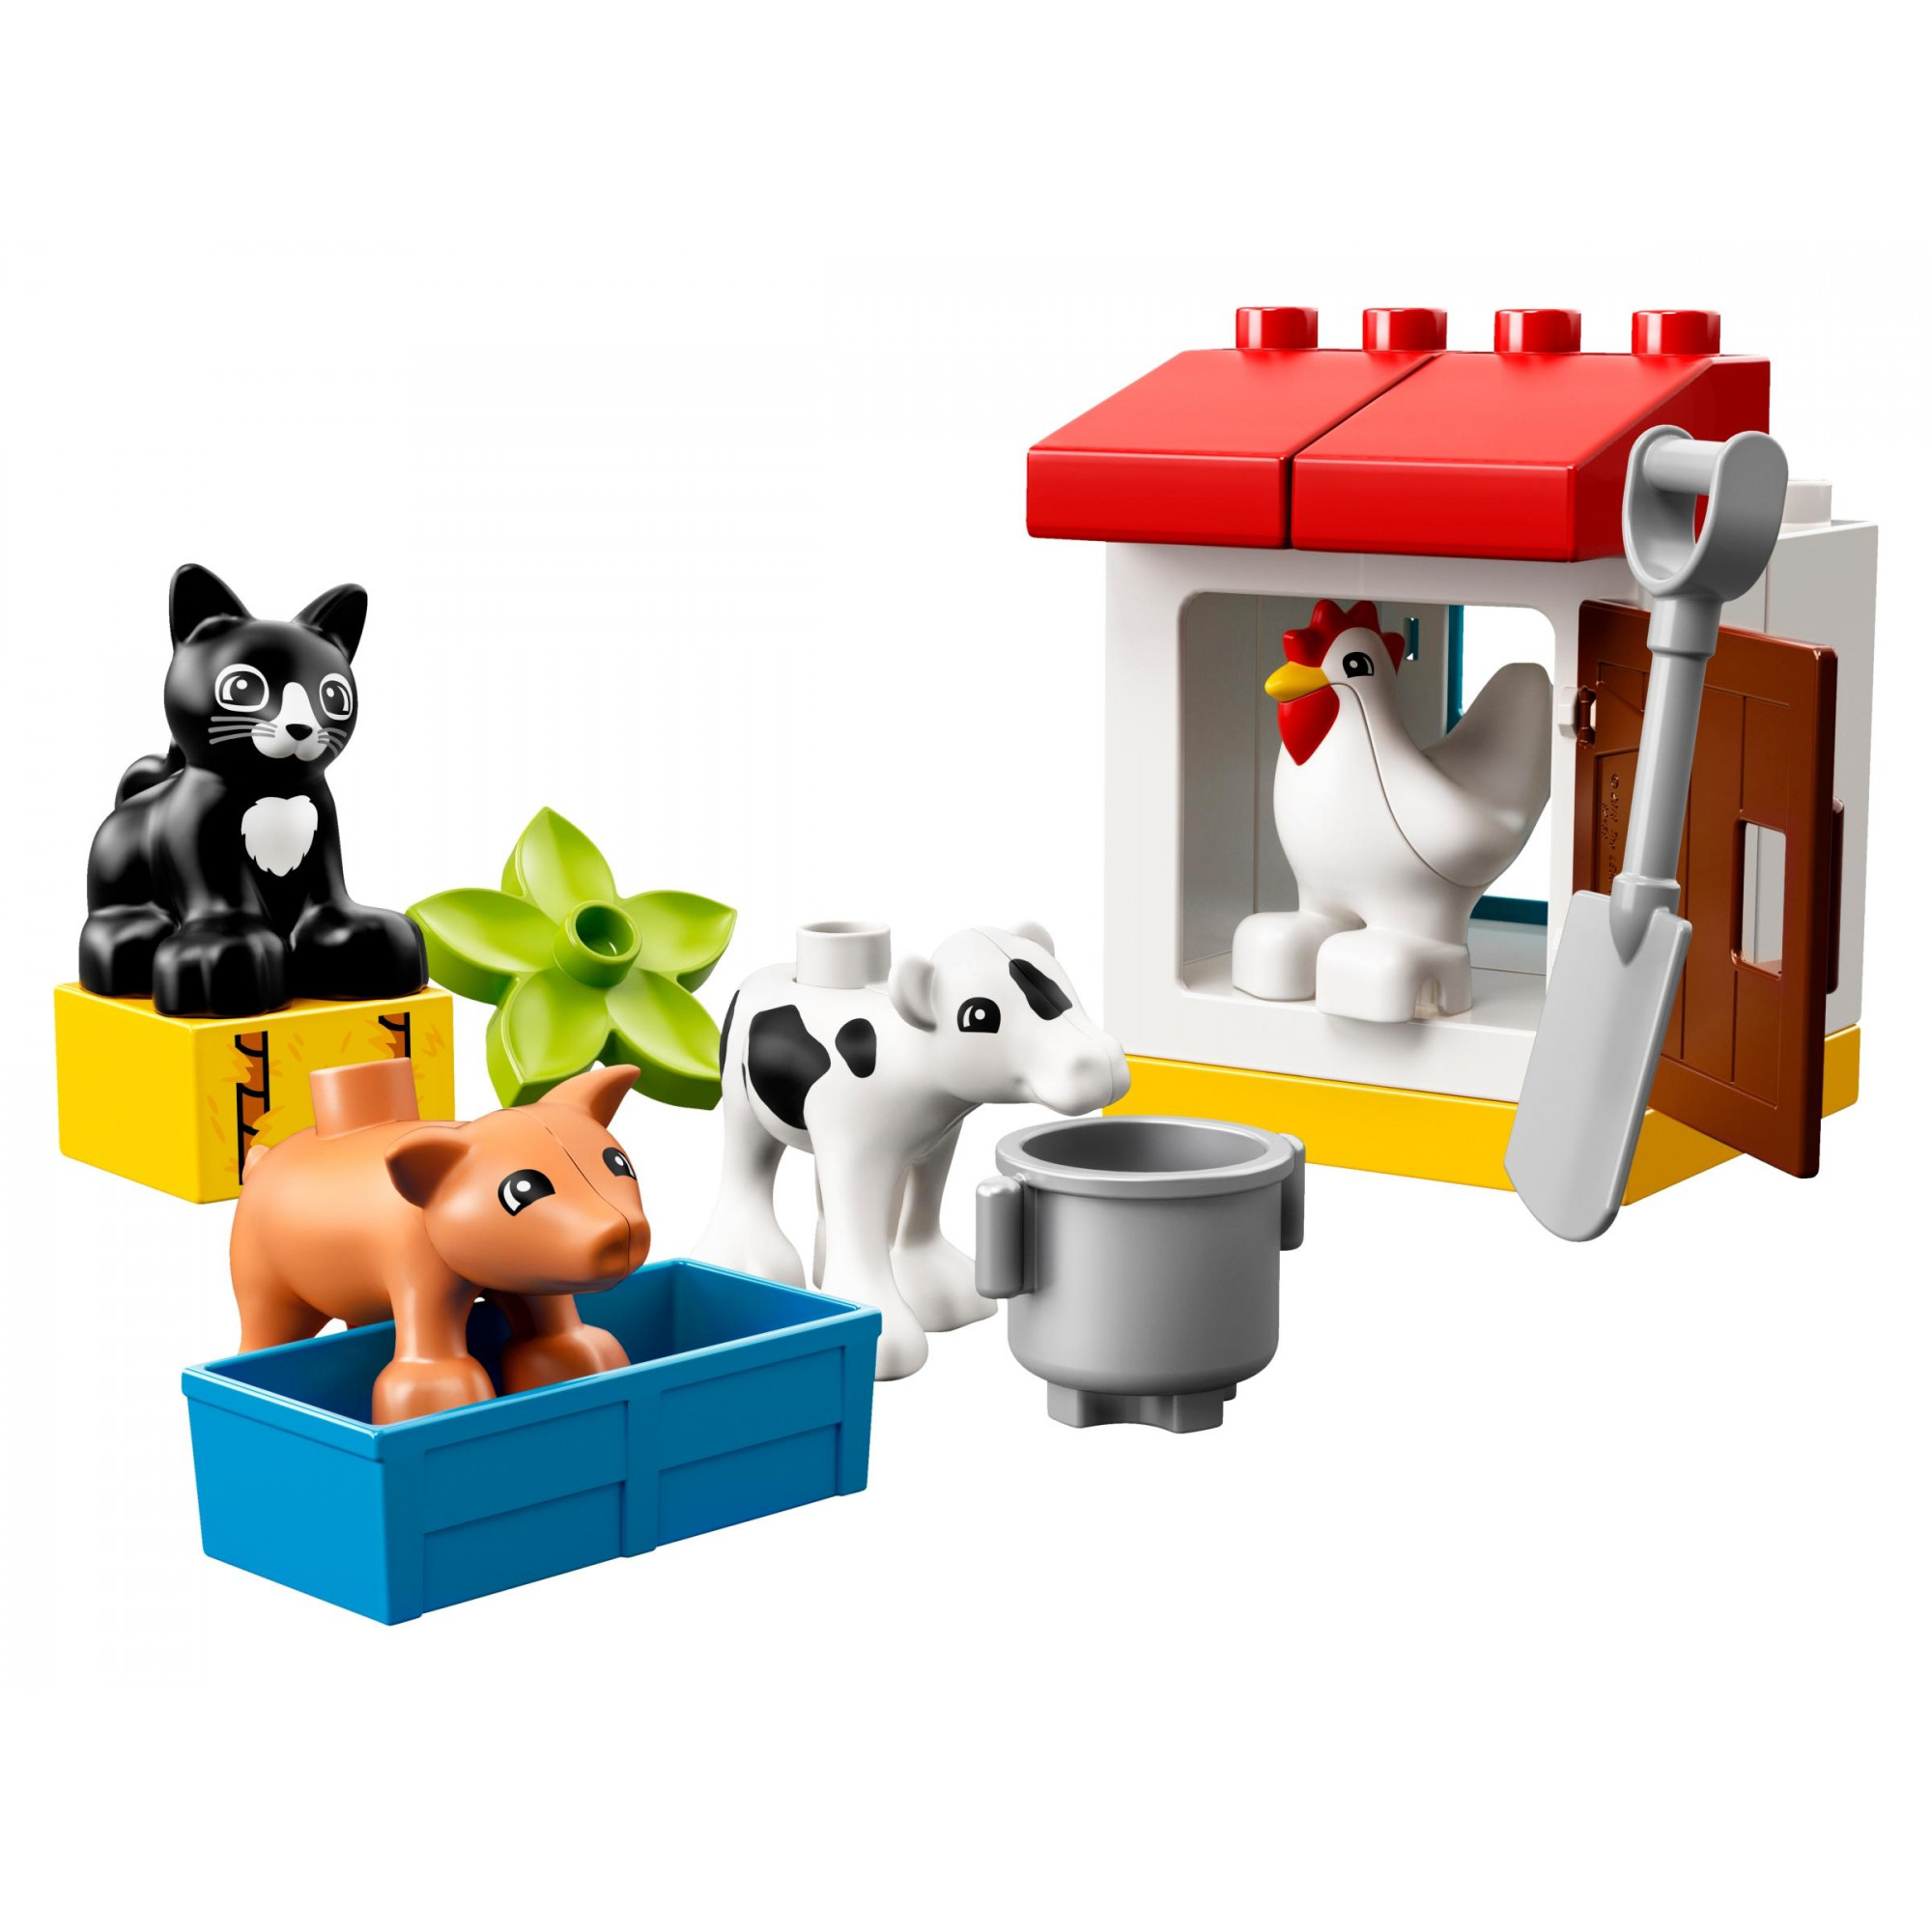 LEGO DUPLO Ферма: домашние животные (10870) - зображення 1